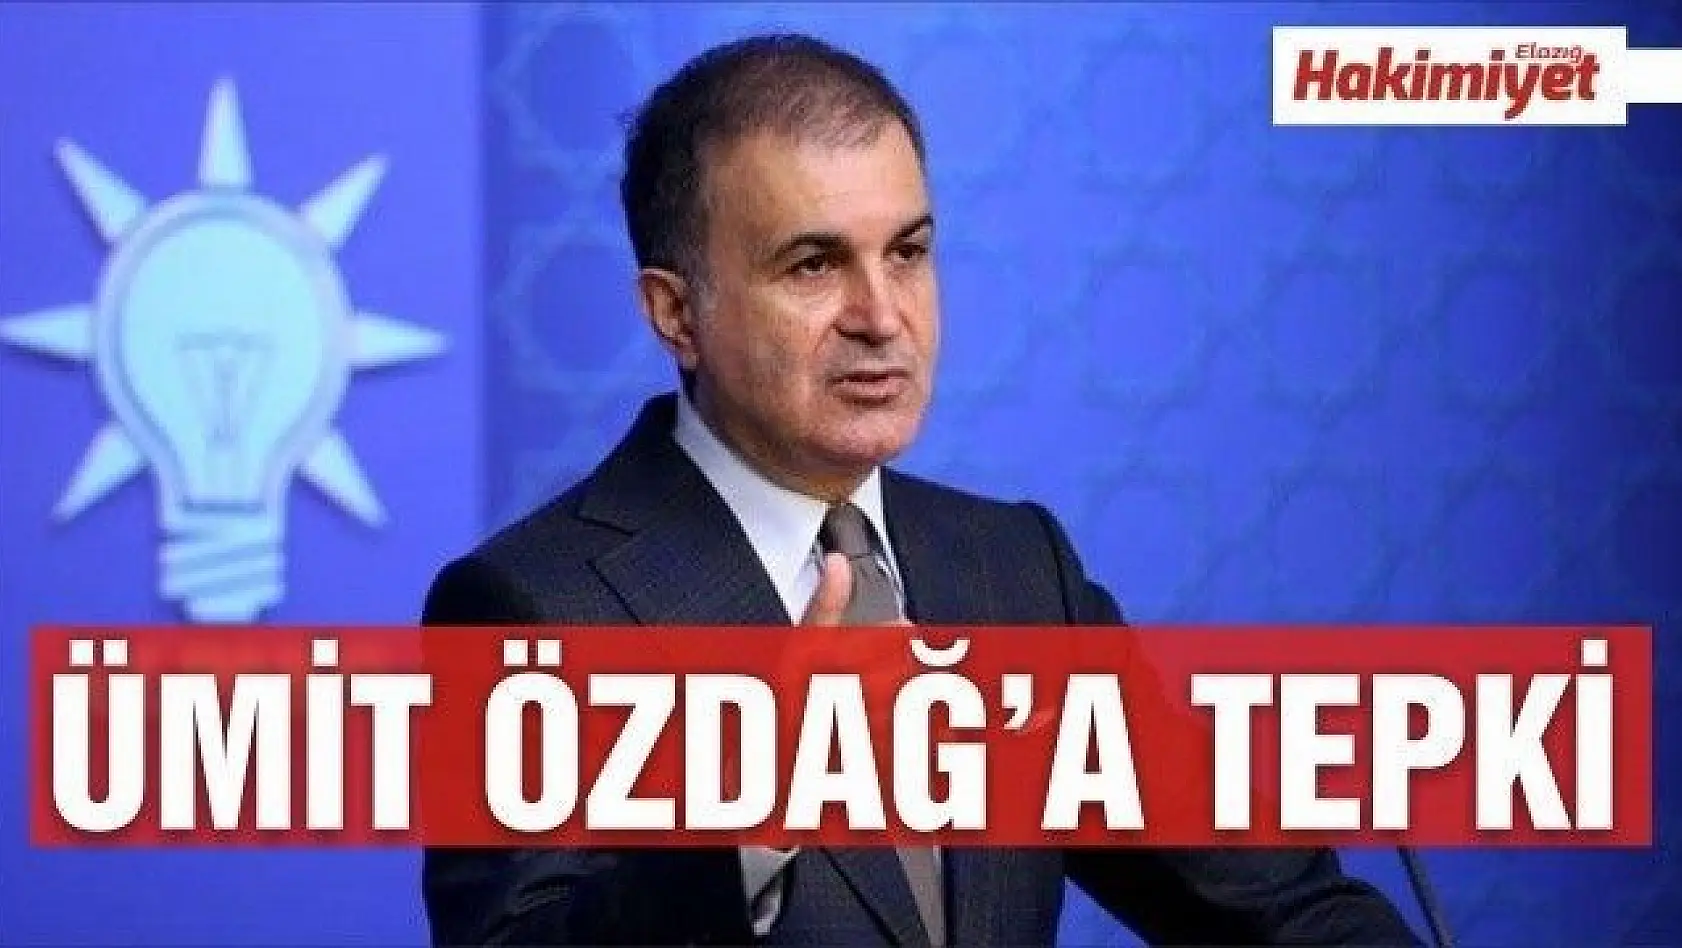 AK Partili Çelik'ten Ümit Özdağ'a tepki: 'Ahlaksız bir yalan söylemiş'